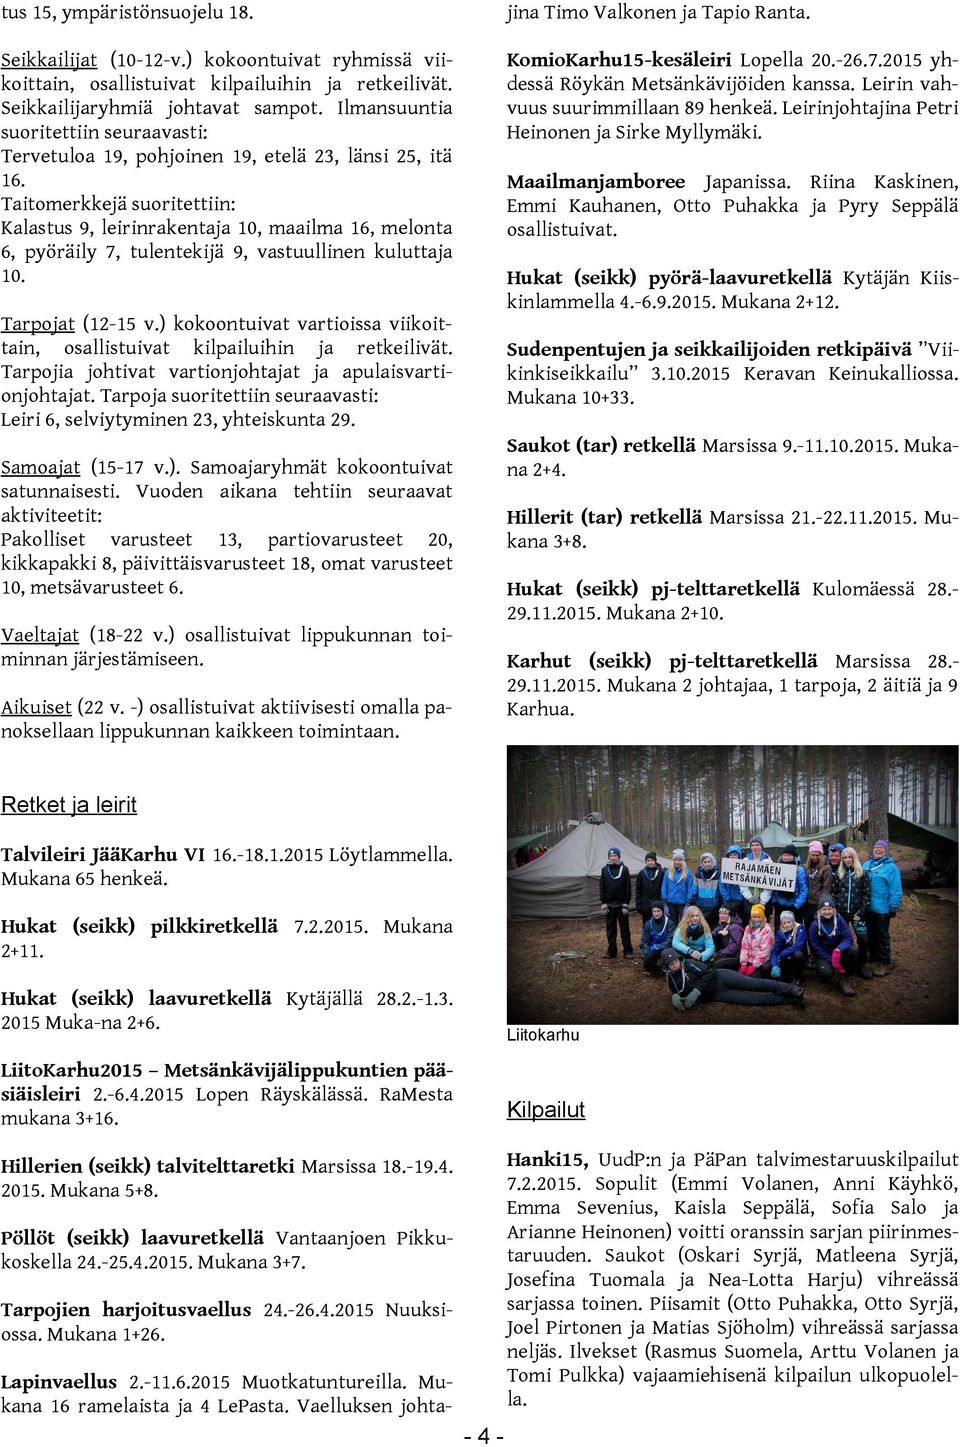 Taitomerkkejä suoritettiin: Kalastus 9, leirinrakentaja 10, maailma 16, melonta 6, pyöräily 7, tulentekijä 9, vastuullinen kuluttaja 10. KomioKarhu15-kesäleiri Lopella 20.-26.7.2015 yhdessä Röykän Metsänkävijöiden kanssa.